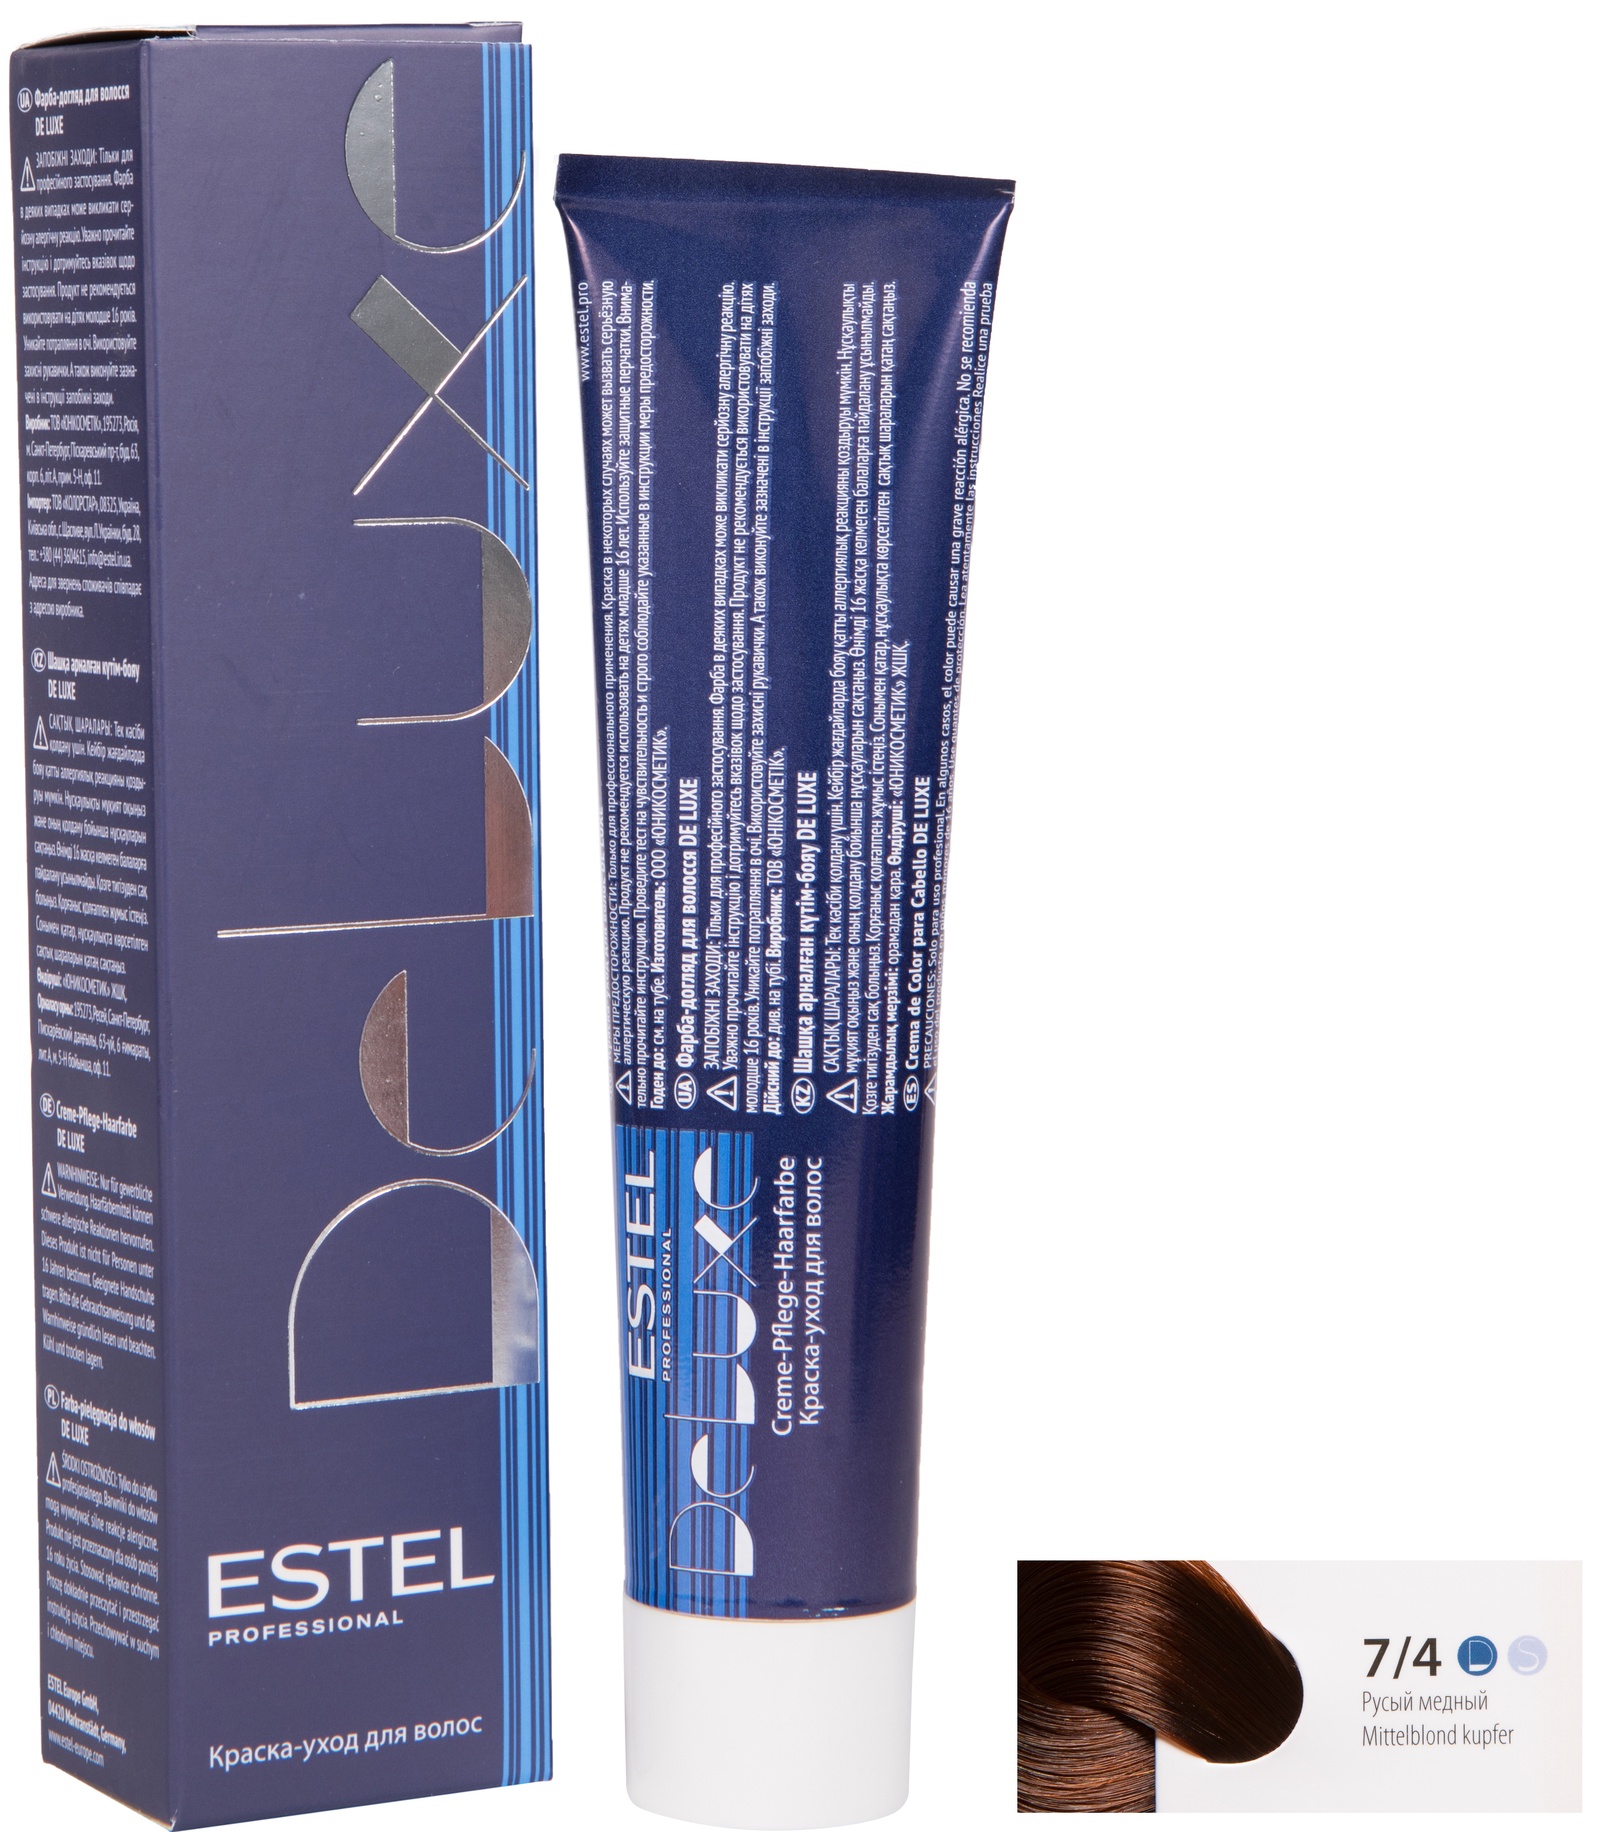 Краска для волос ESTEL PROFESSIONAL 7/4 DE LUXE краска-уход для окрашивания волос, русый медный 60 мл